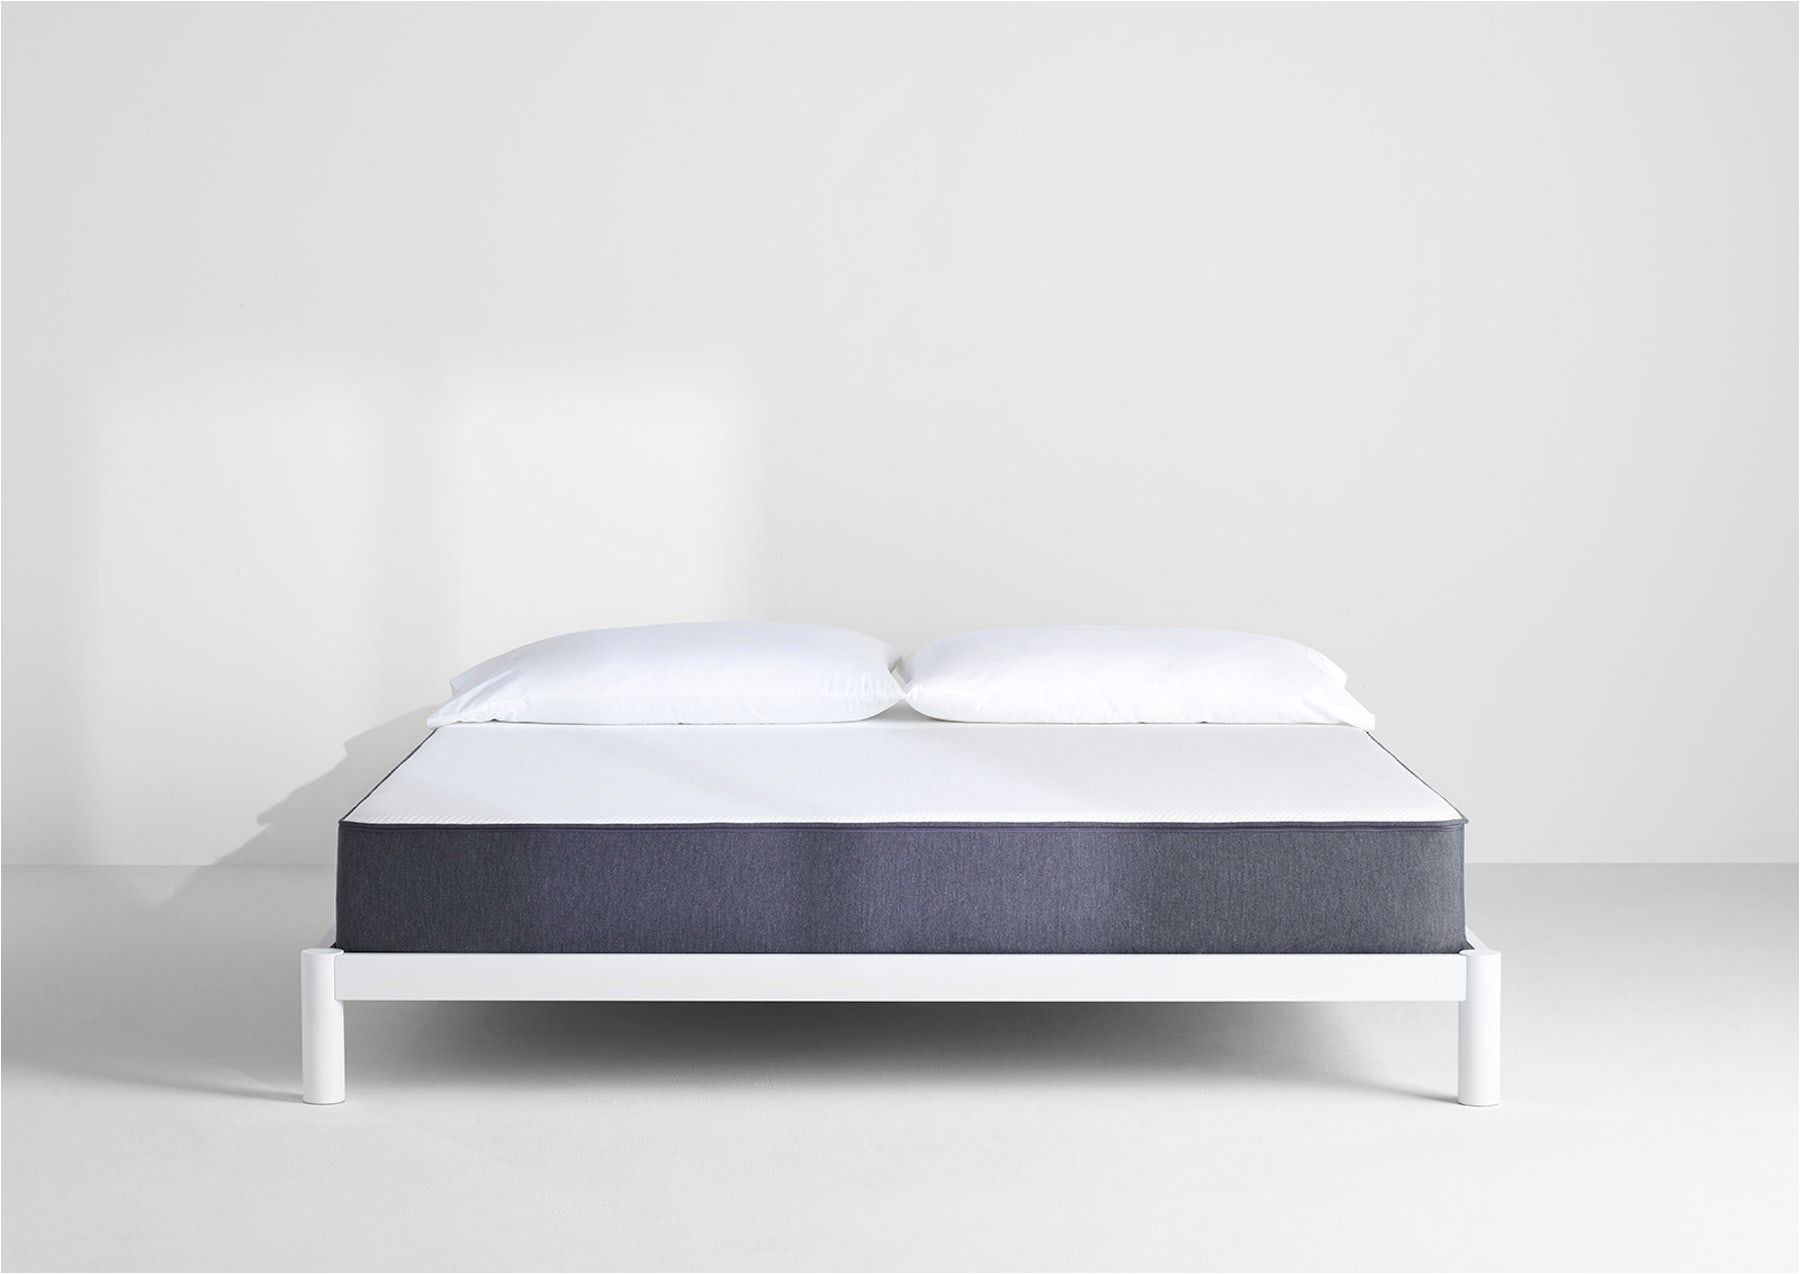 hesstun spring mattress review